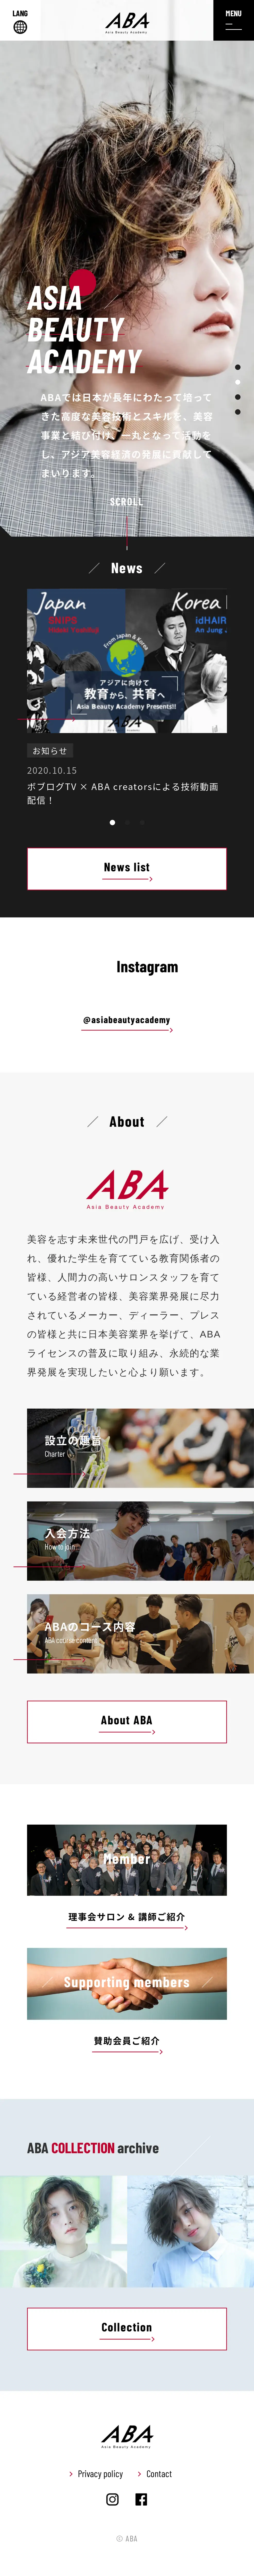 キャプチャ画面 会社名:一般社団法人アジアビューティアカデミープロジェクト名:ABA | Asia Beauty Academy 画面名:A デバイス名:SPカテゴリ:教育・学校タグ:SP,A